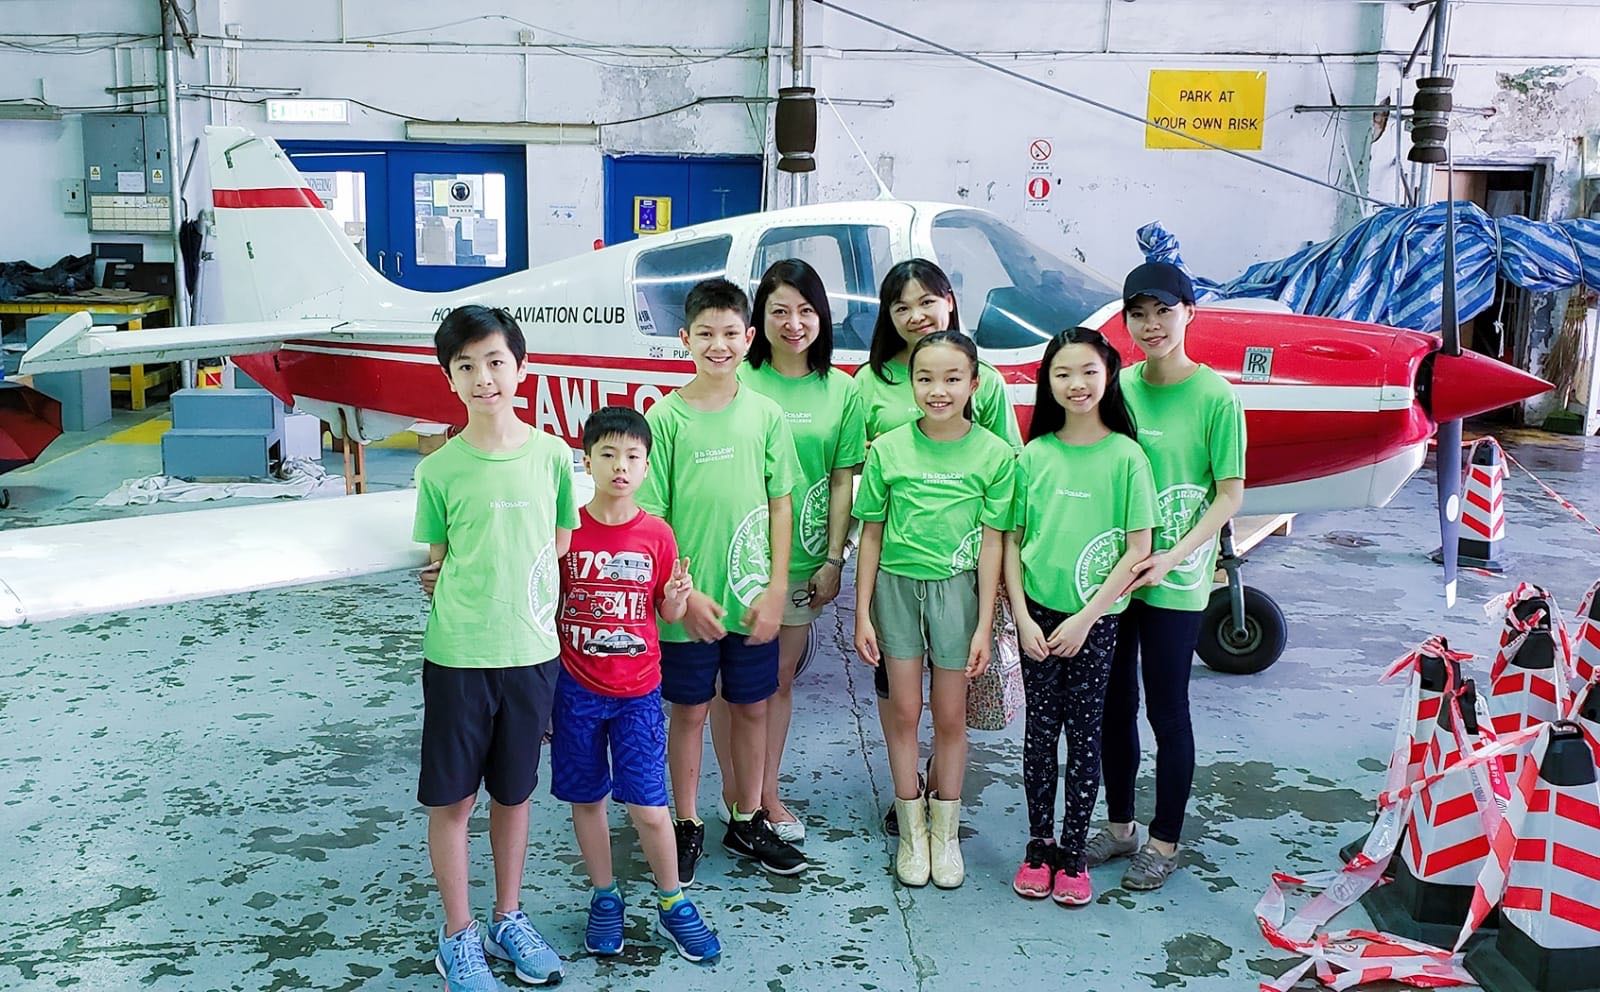 Visit to the Hong Kong Aviation Club